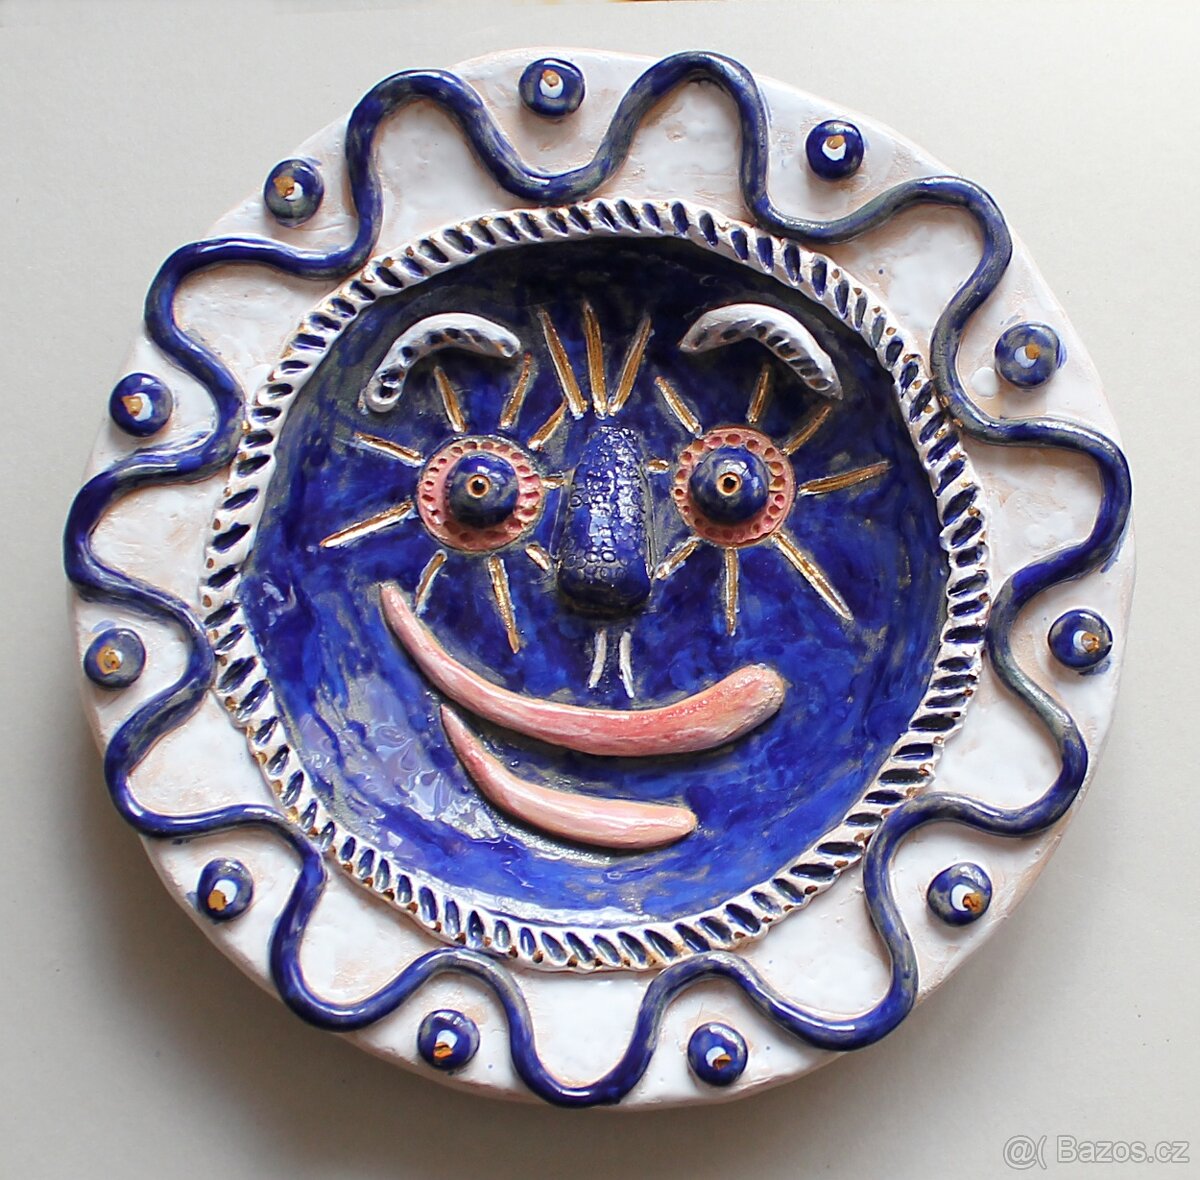 Prodán závěsný keramický talíř Modré slunce